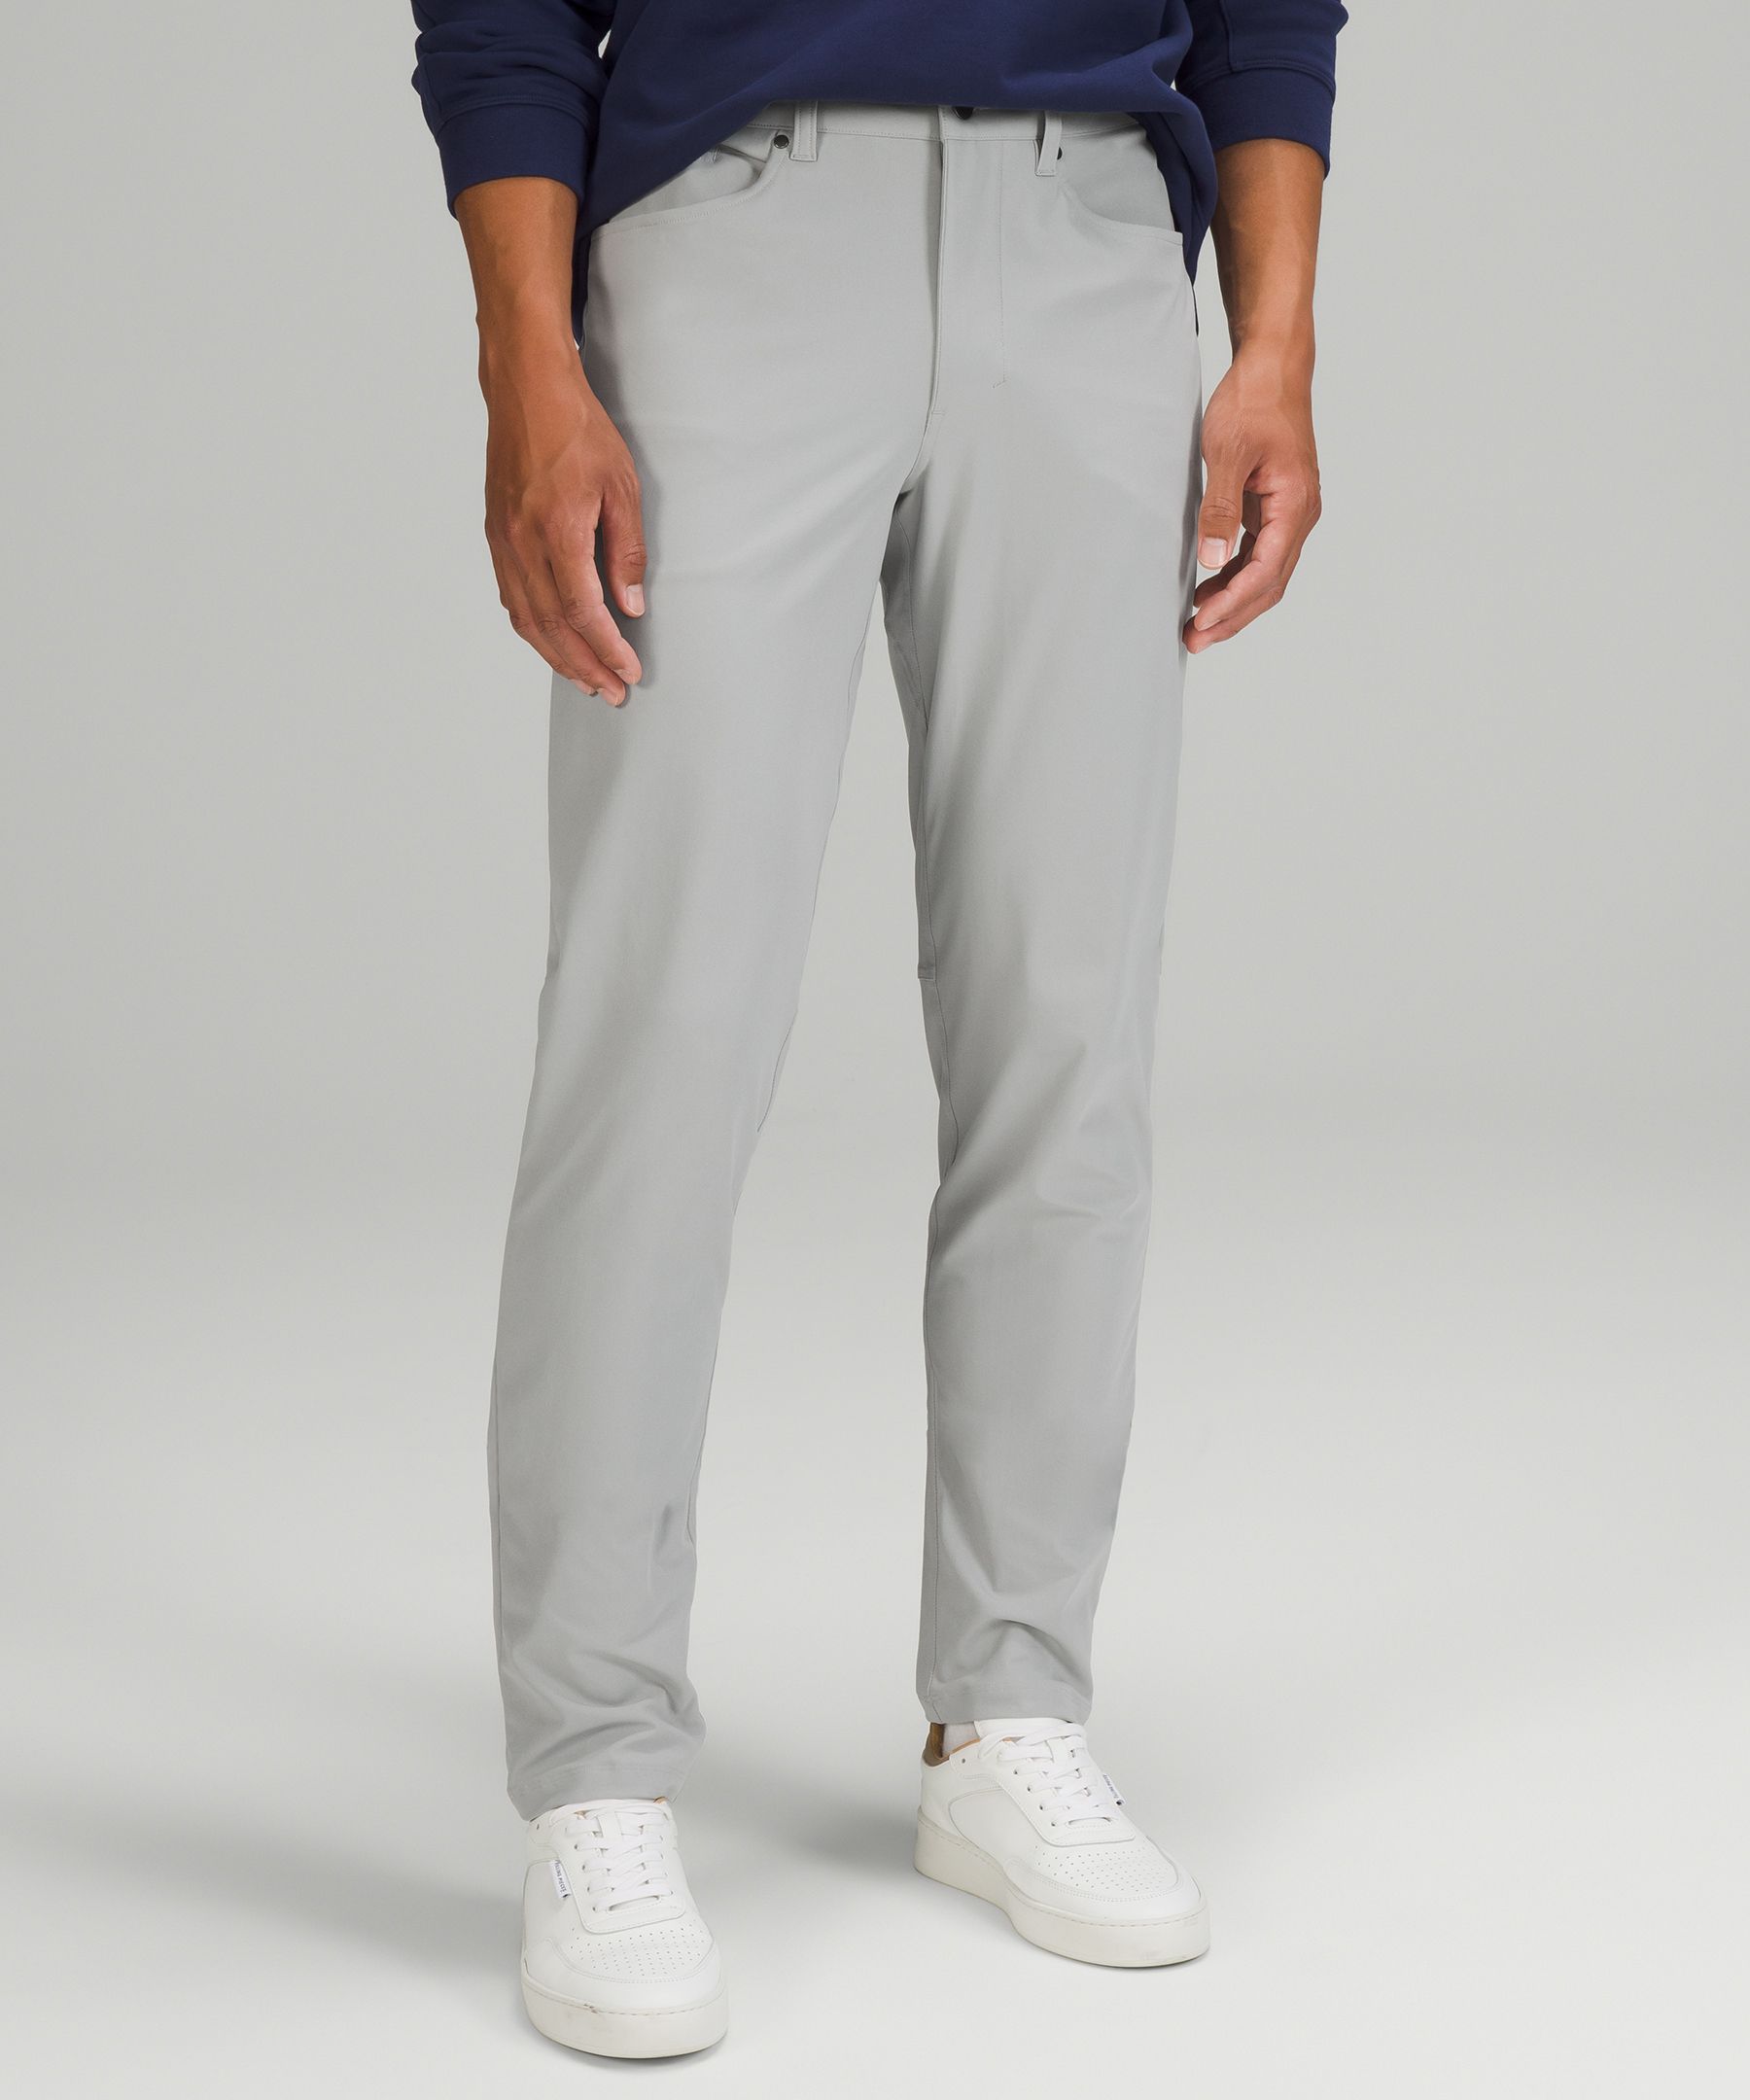 ABC Slim-Fit 5 Pocket Pant 30L *Warpstreme, Men's Trousers